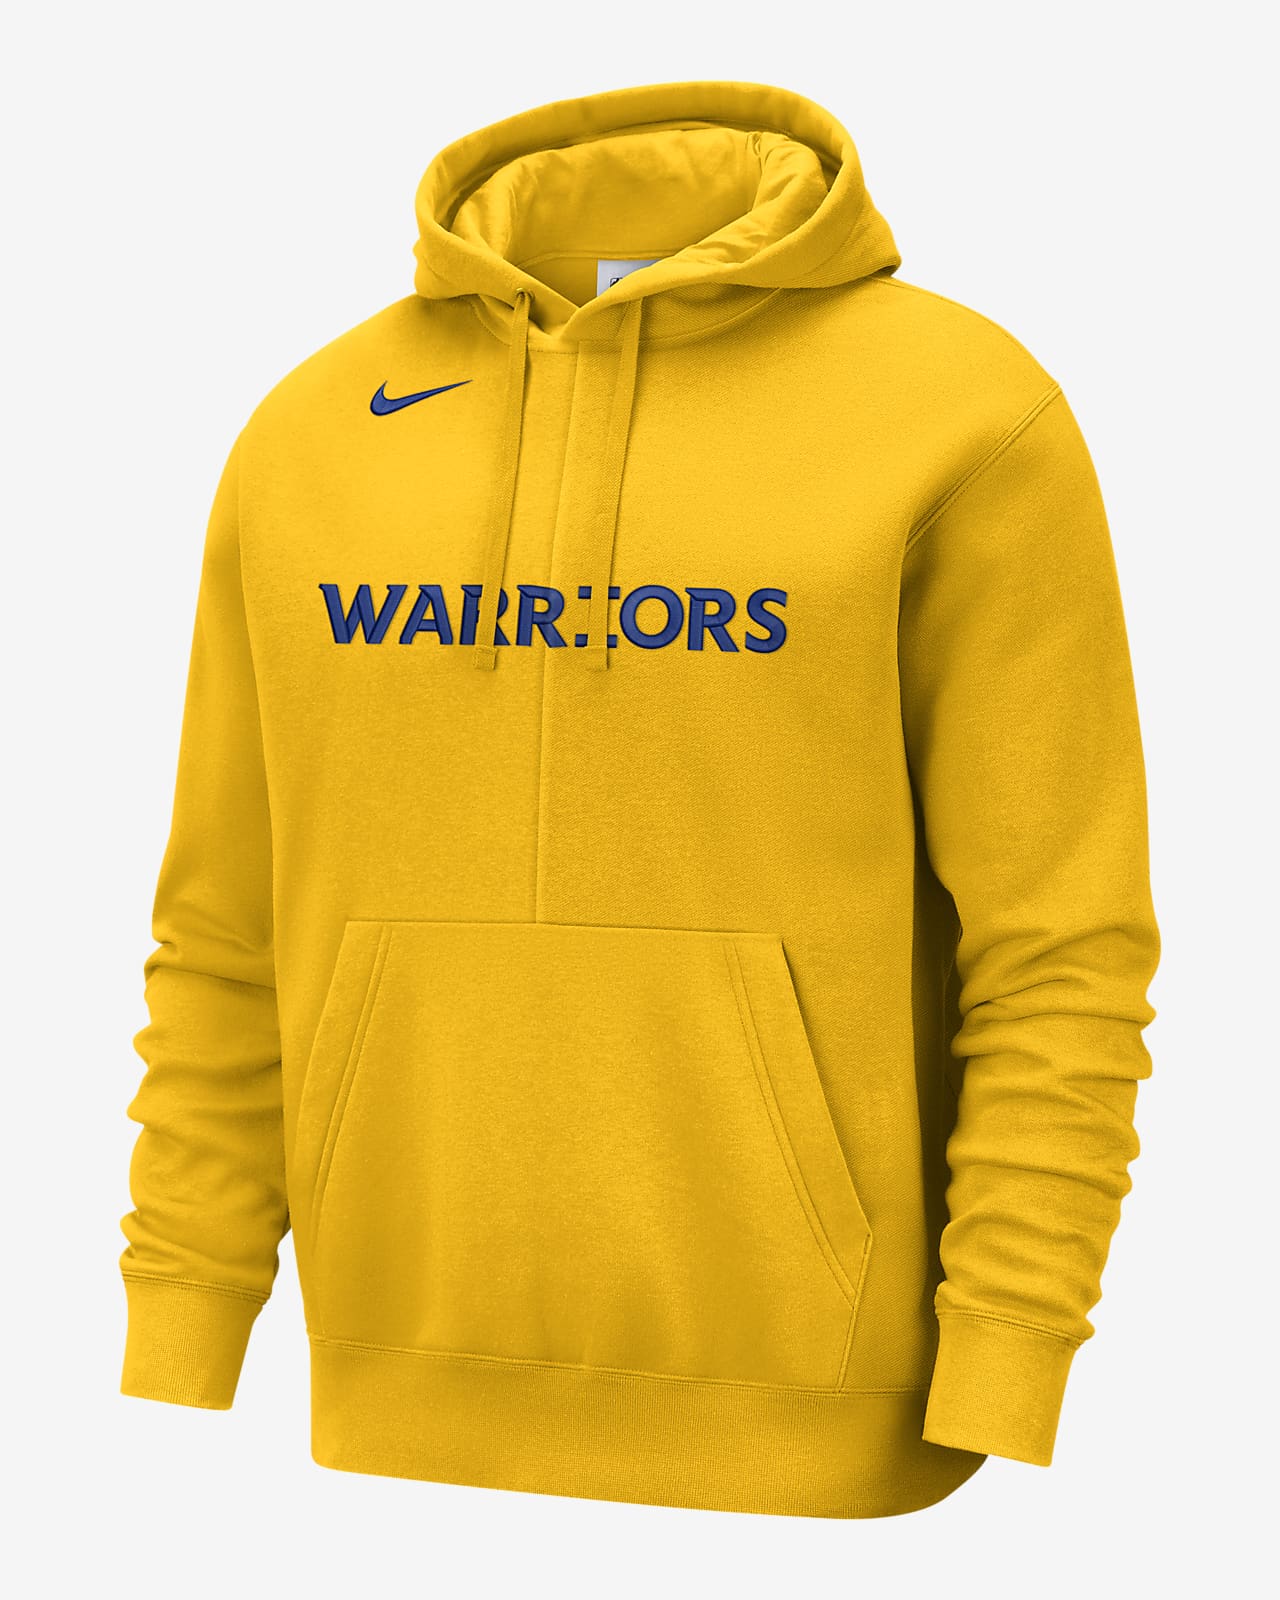 Golden State Warriors Courtside Men's Nike Fleece Pullover Hoodie. .com